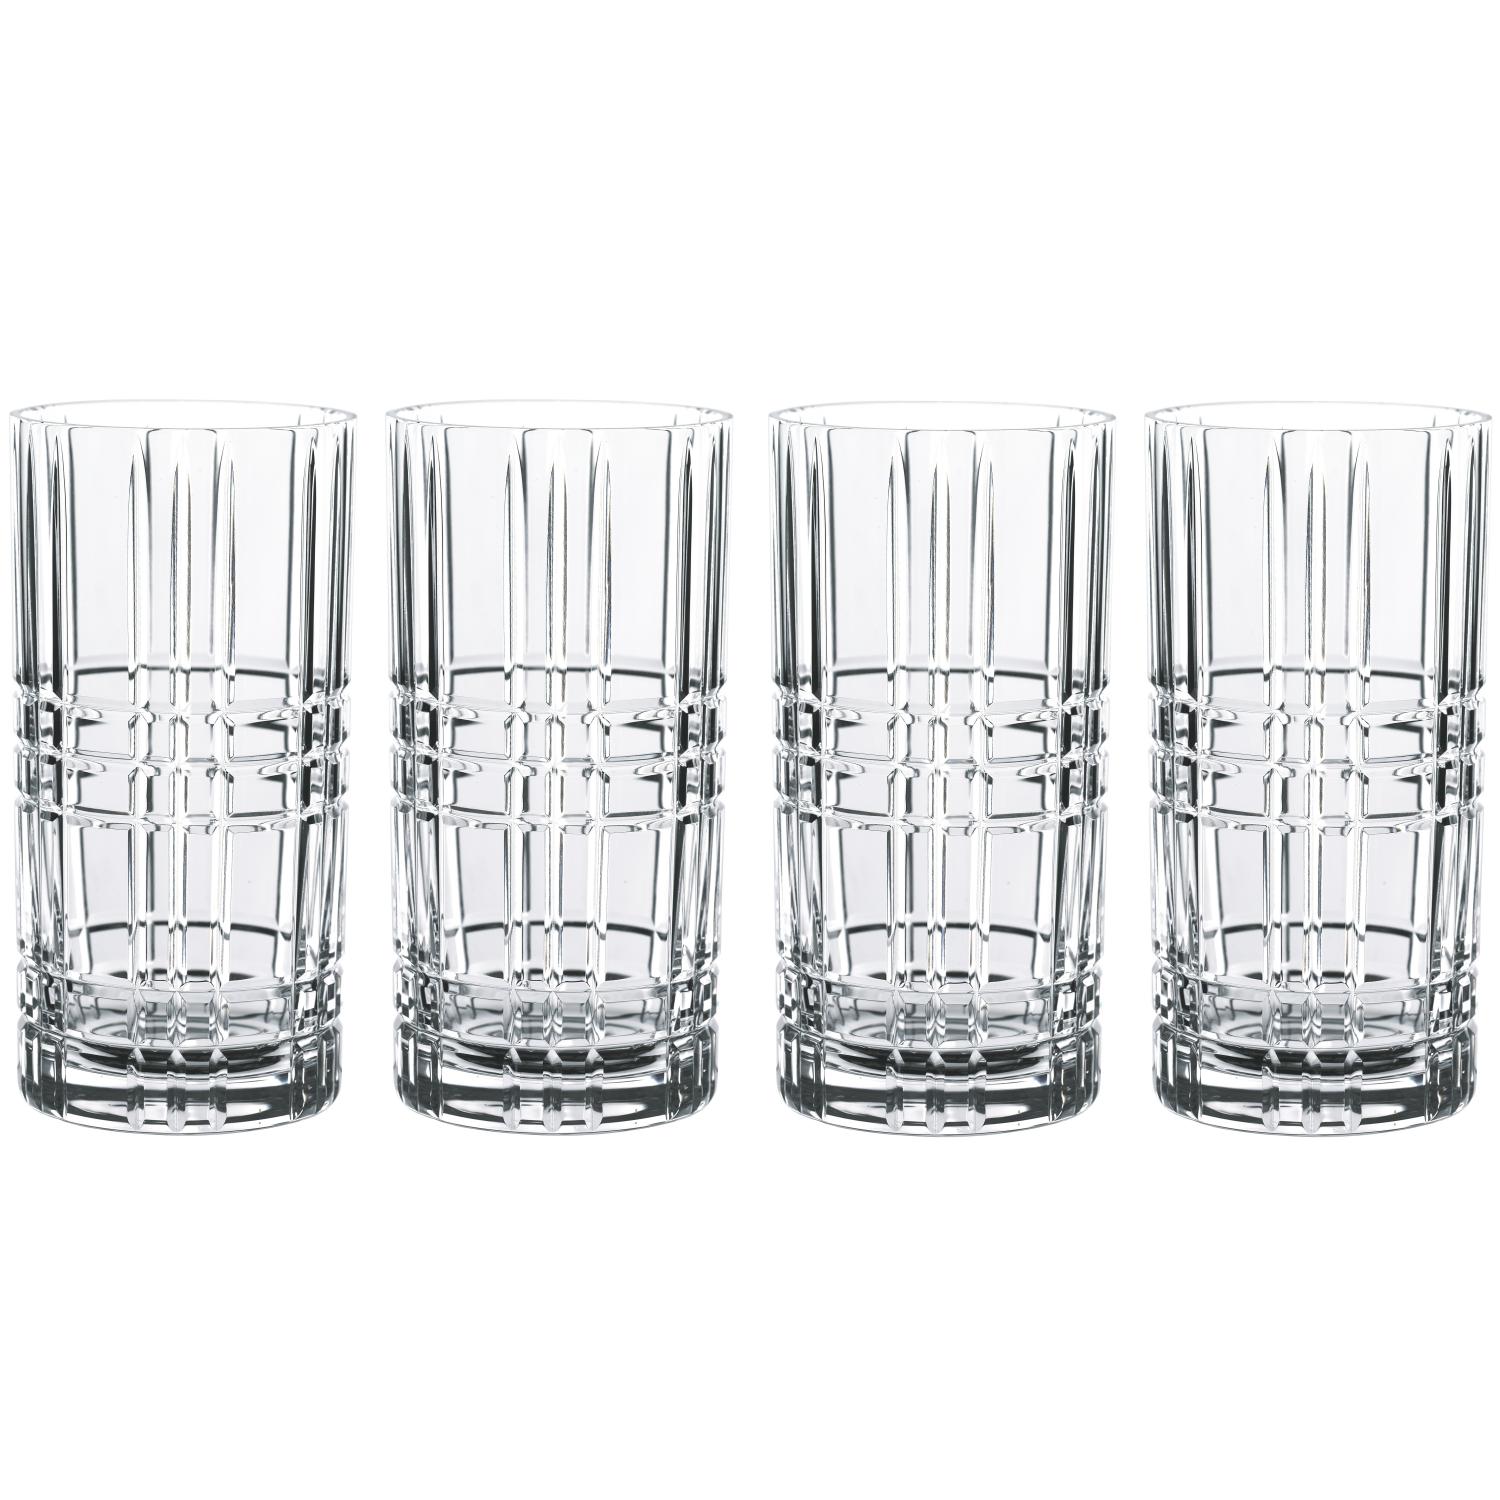 4 стакана для коктейлей Nachtmann Square Longdrink 445 мл (арт. 101049)